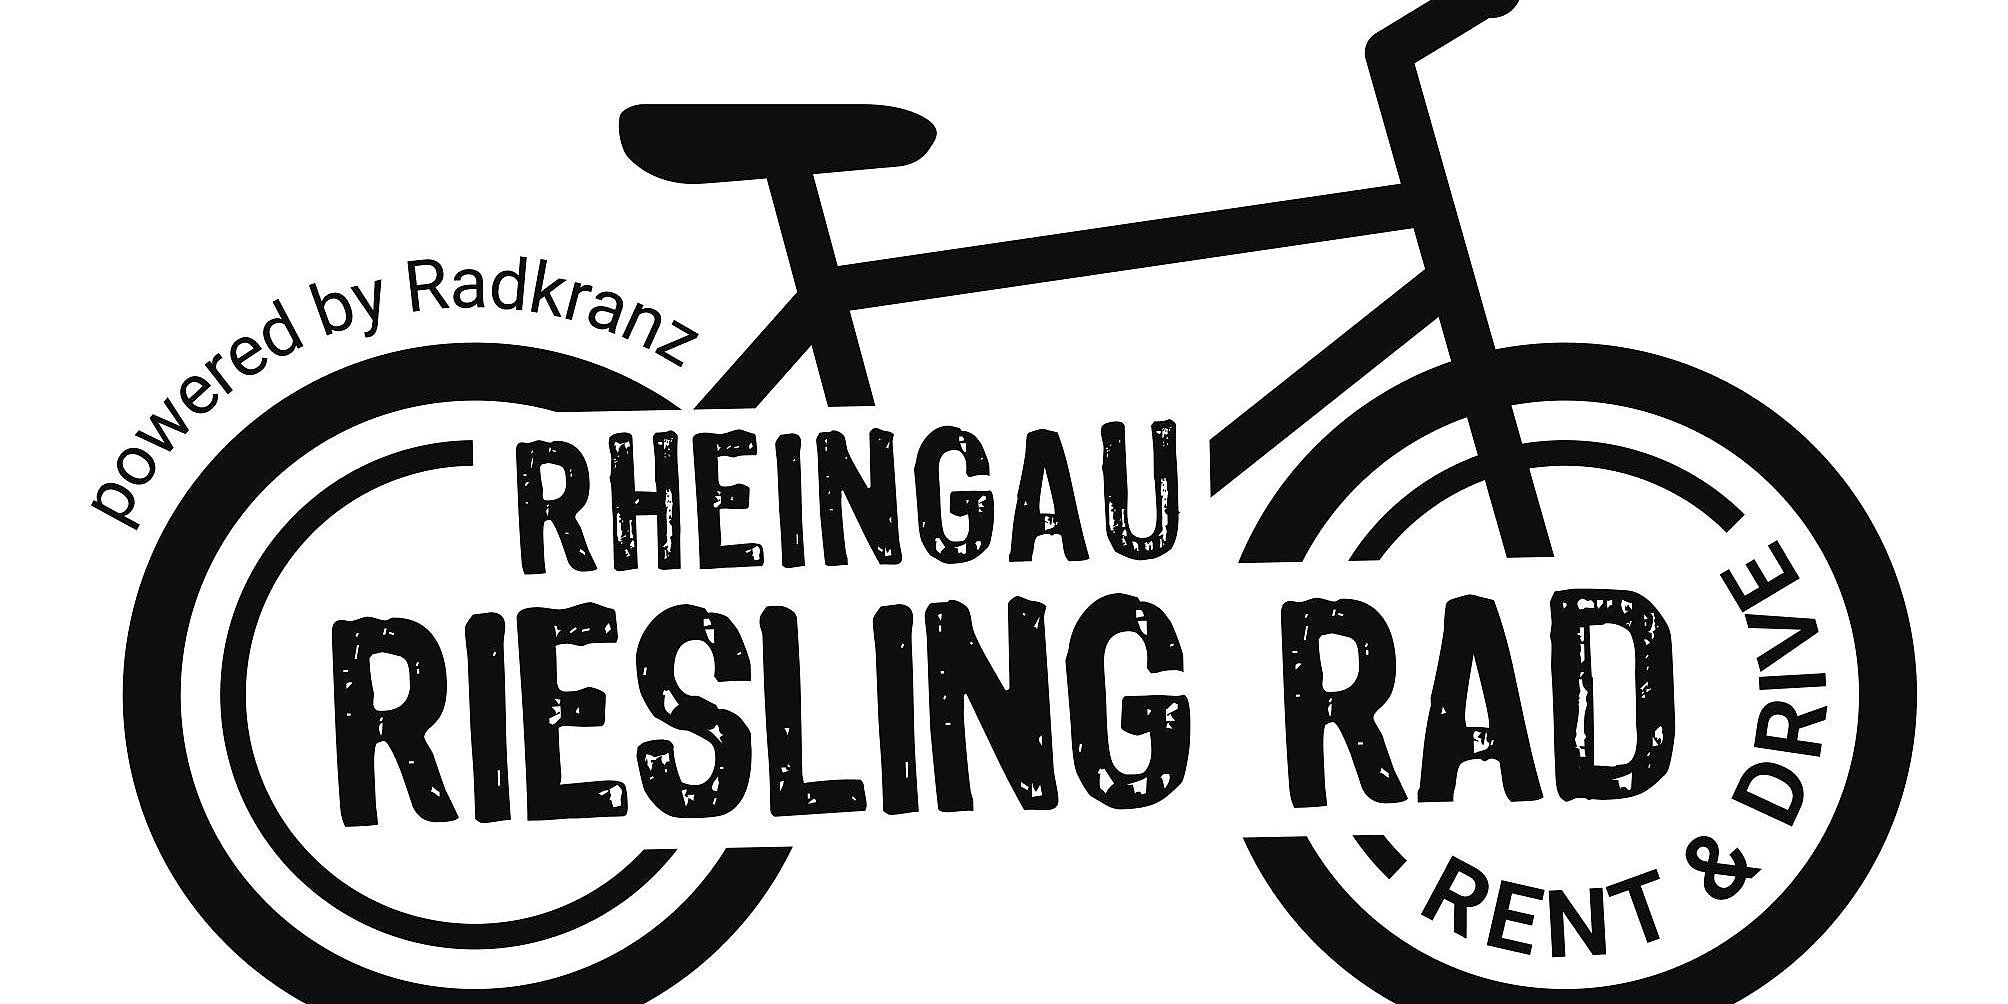 Rheingau Riesling Rad